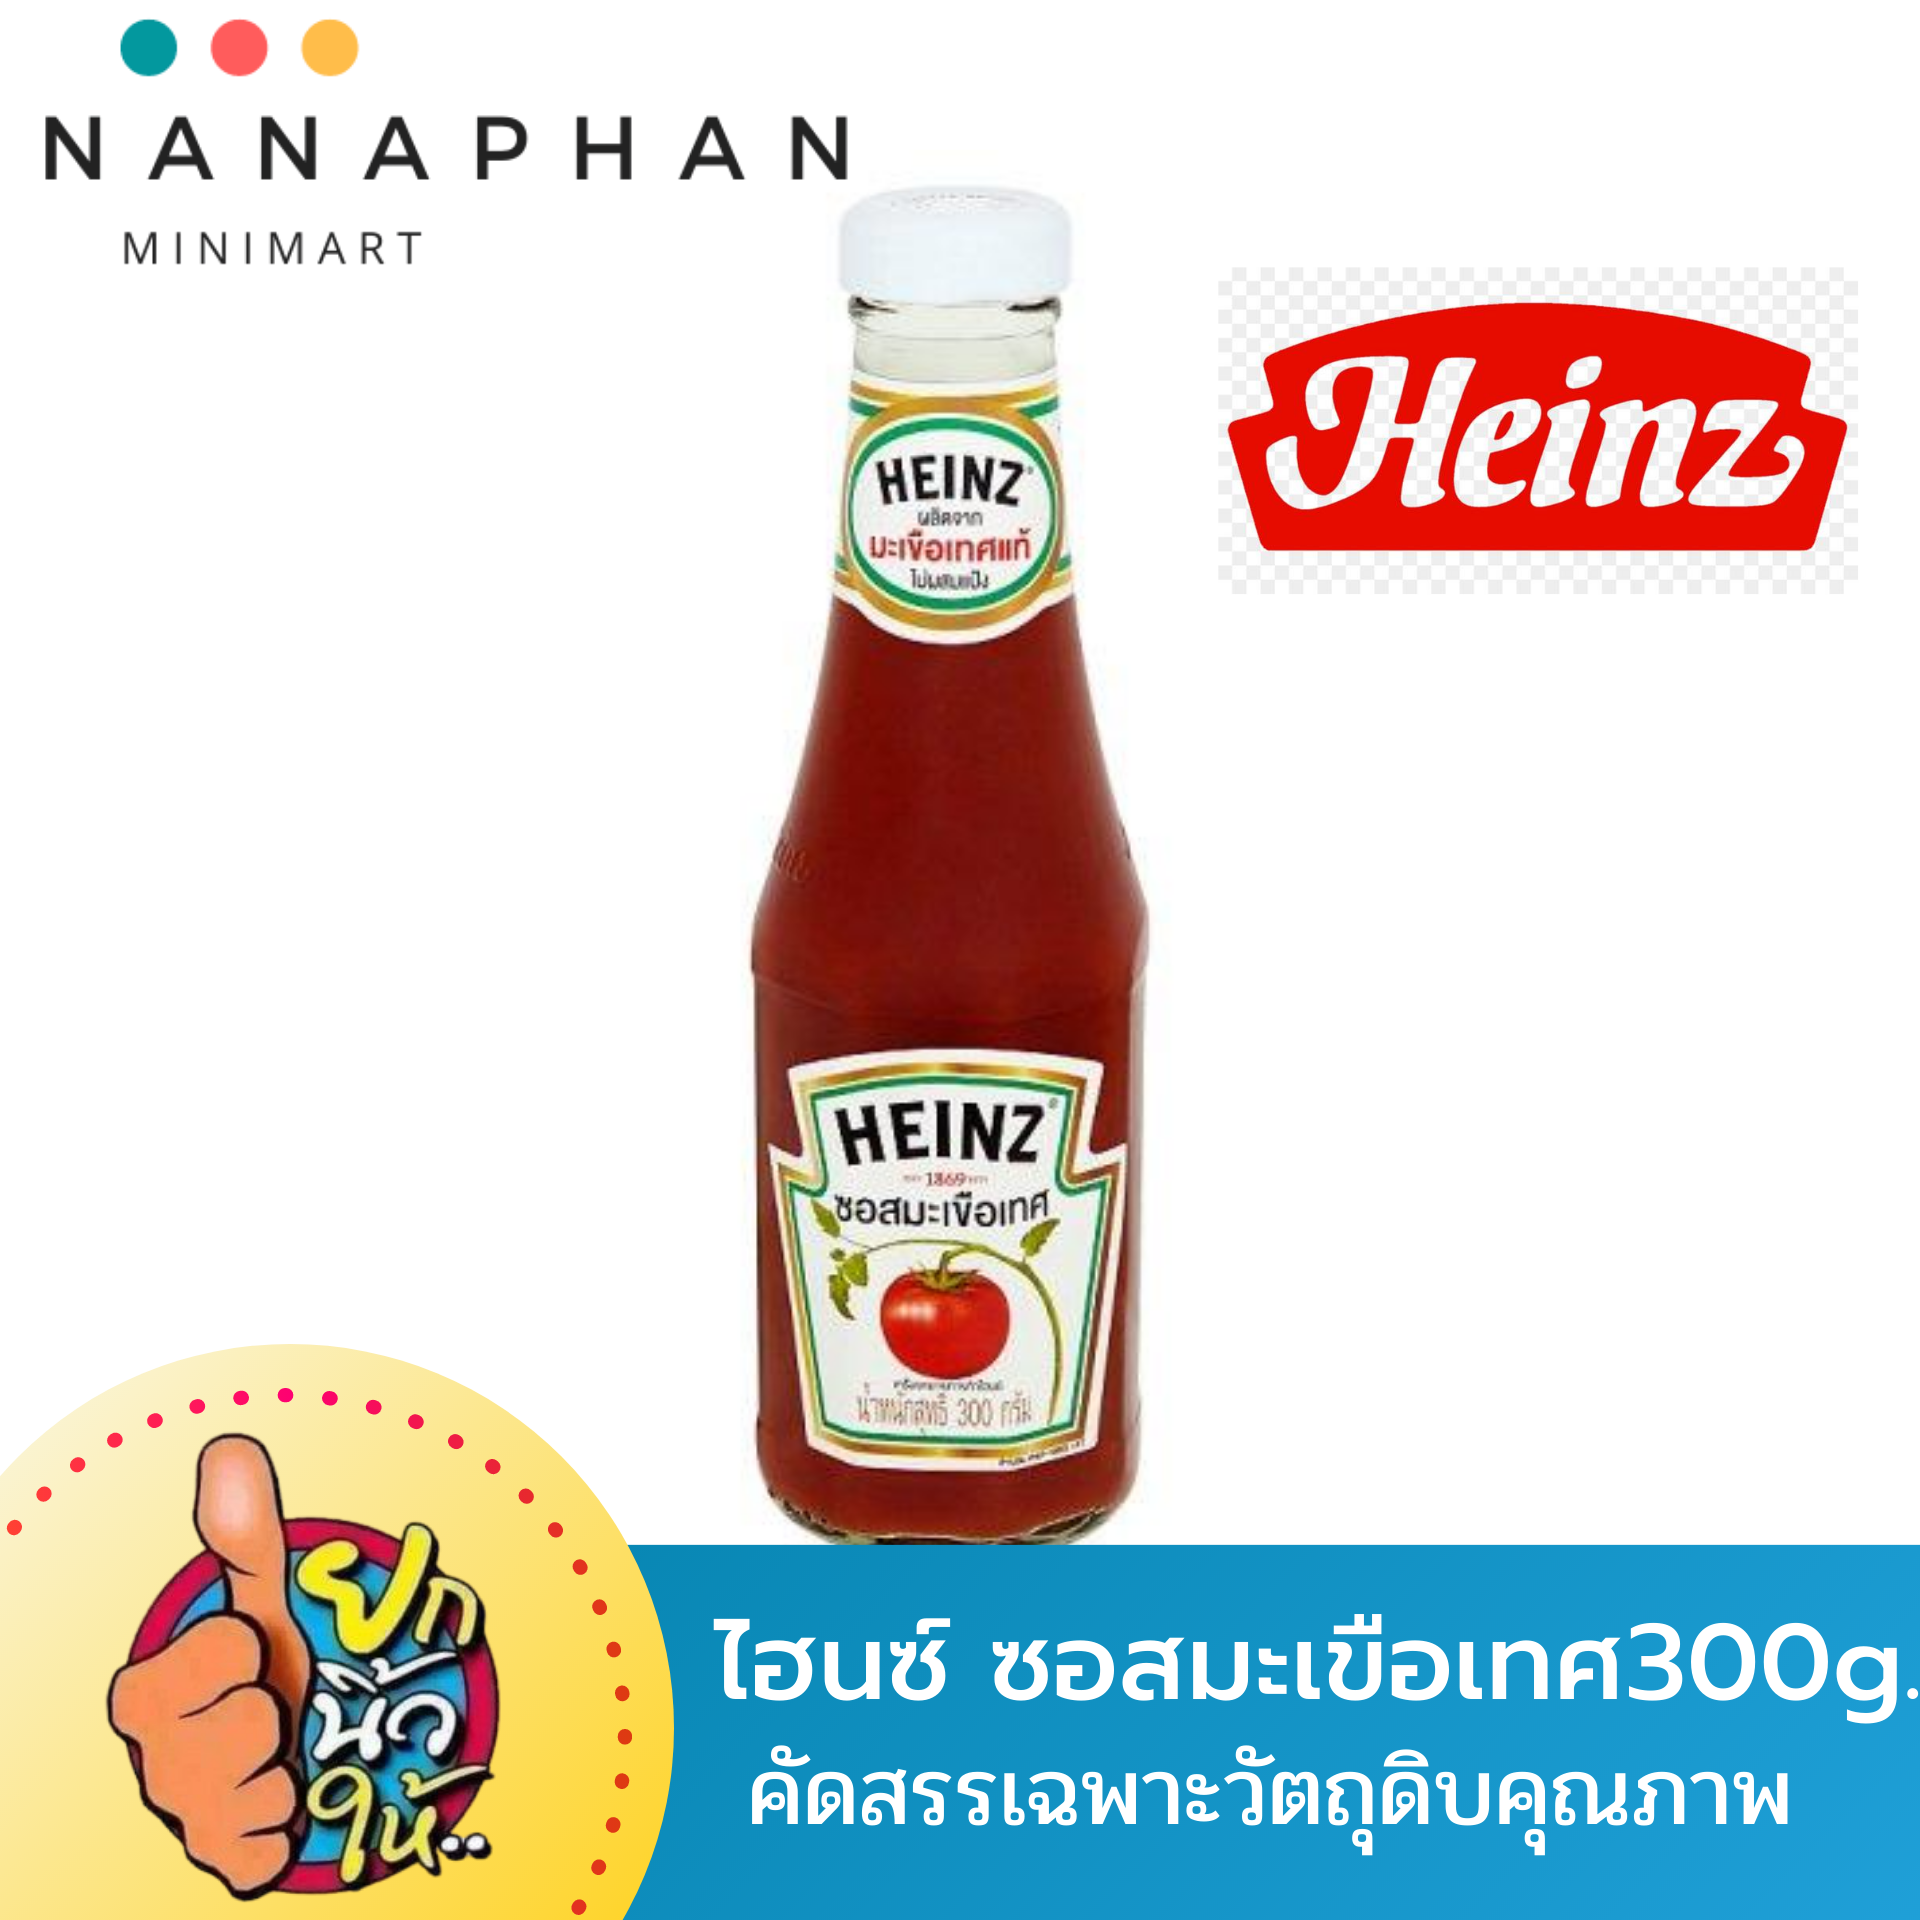 Heinz ไฮนซ์ซอสมะเขือเทศ ขนาด 300 กรัม